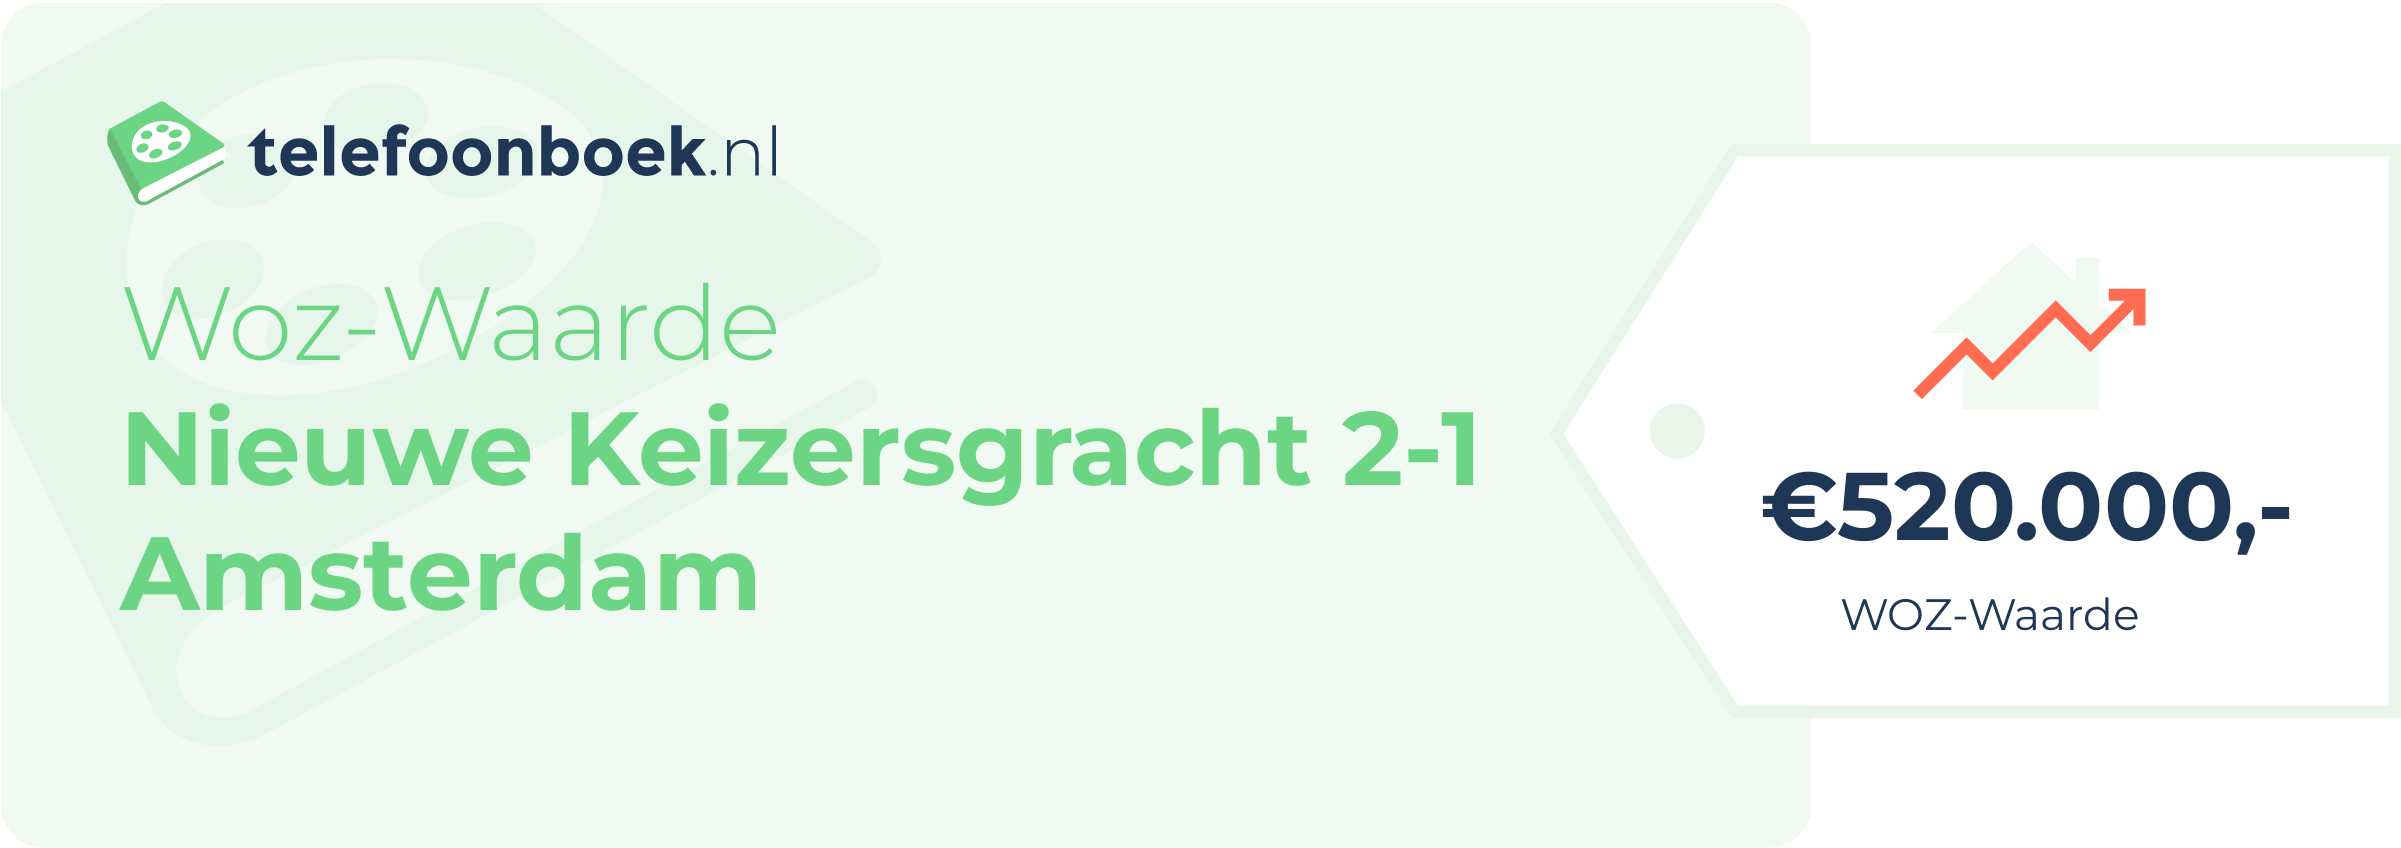 WOZ-waarde Nieuwe Keizersgracht 2-1 Amsterdam